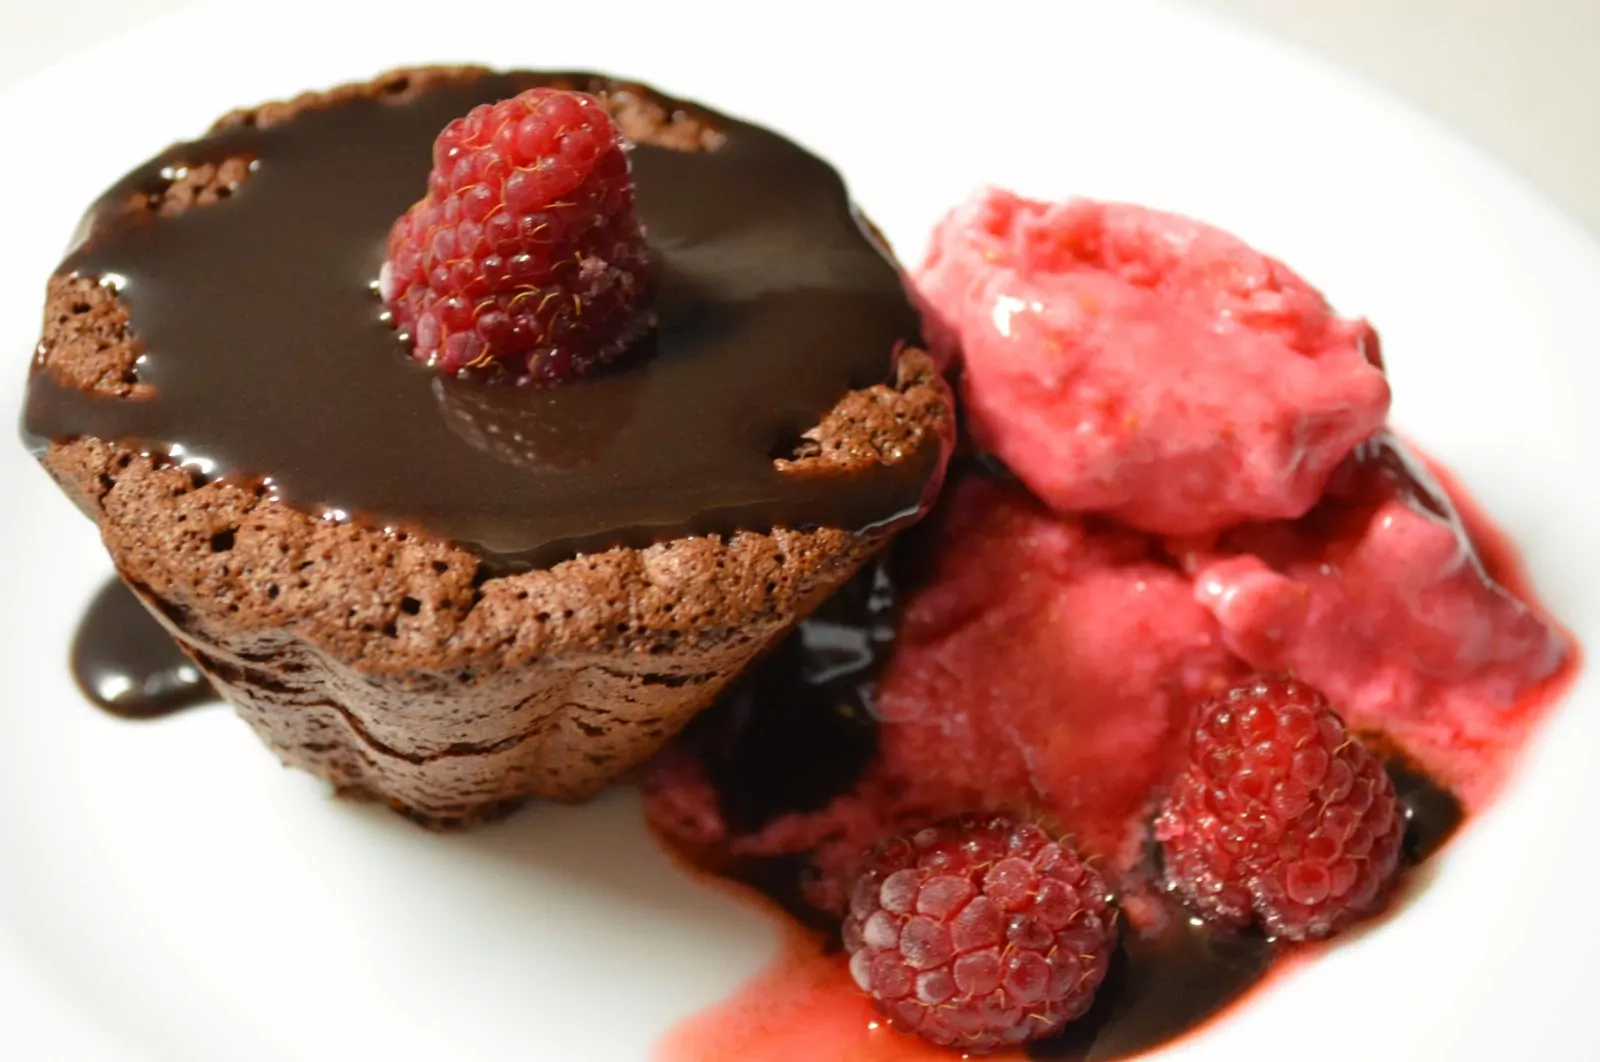 Paprastai ir greitai pagaminamas šokoladinis pyragas - brownie